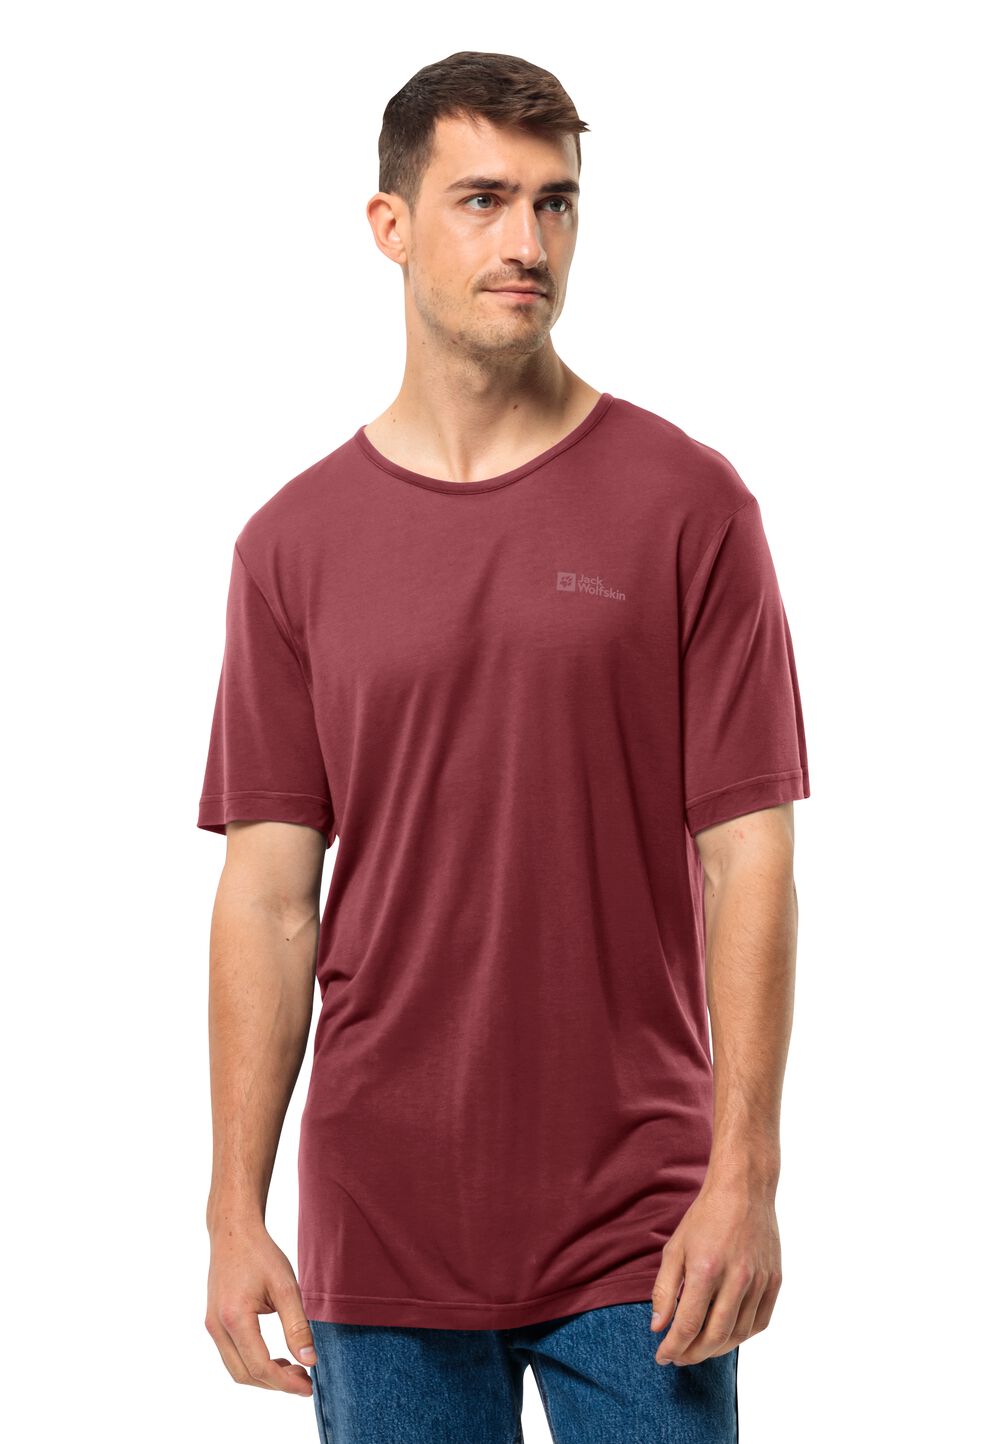 Jack Wolfskin Mola T-Shirt Men Functioneel shirt Heren XXL purper deep ruby